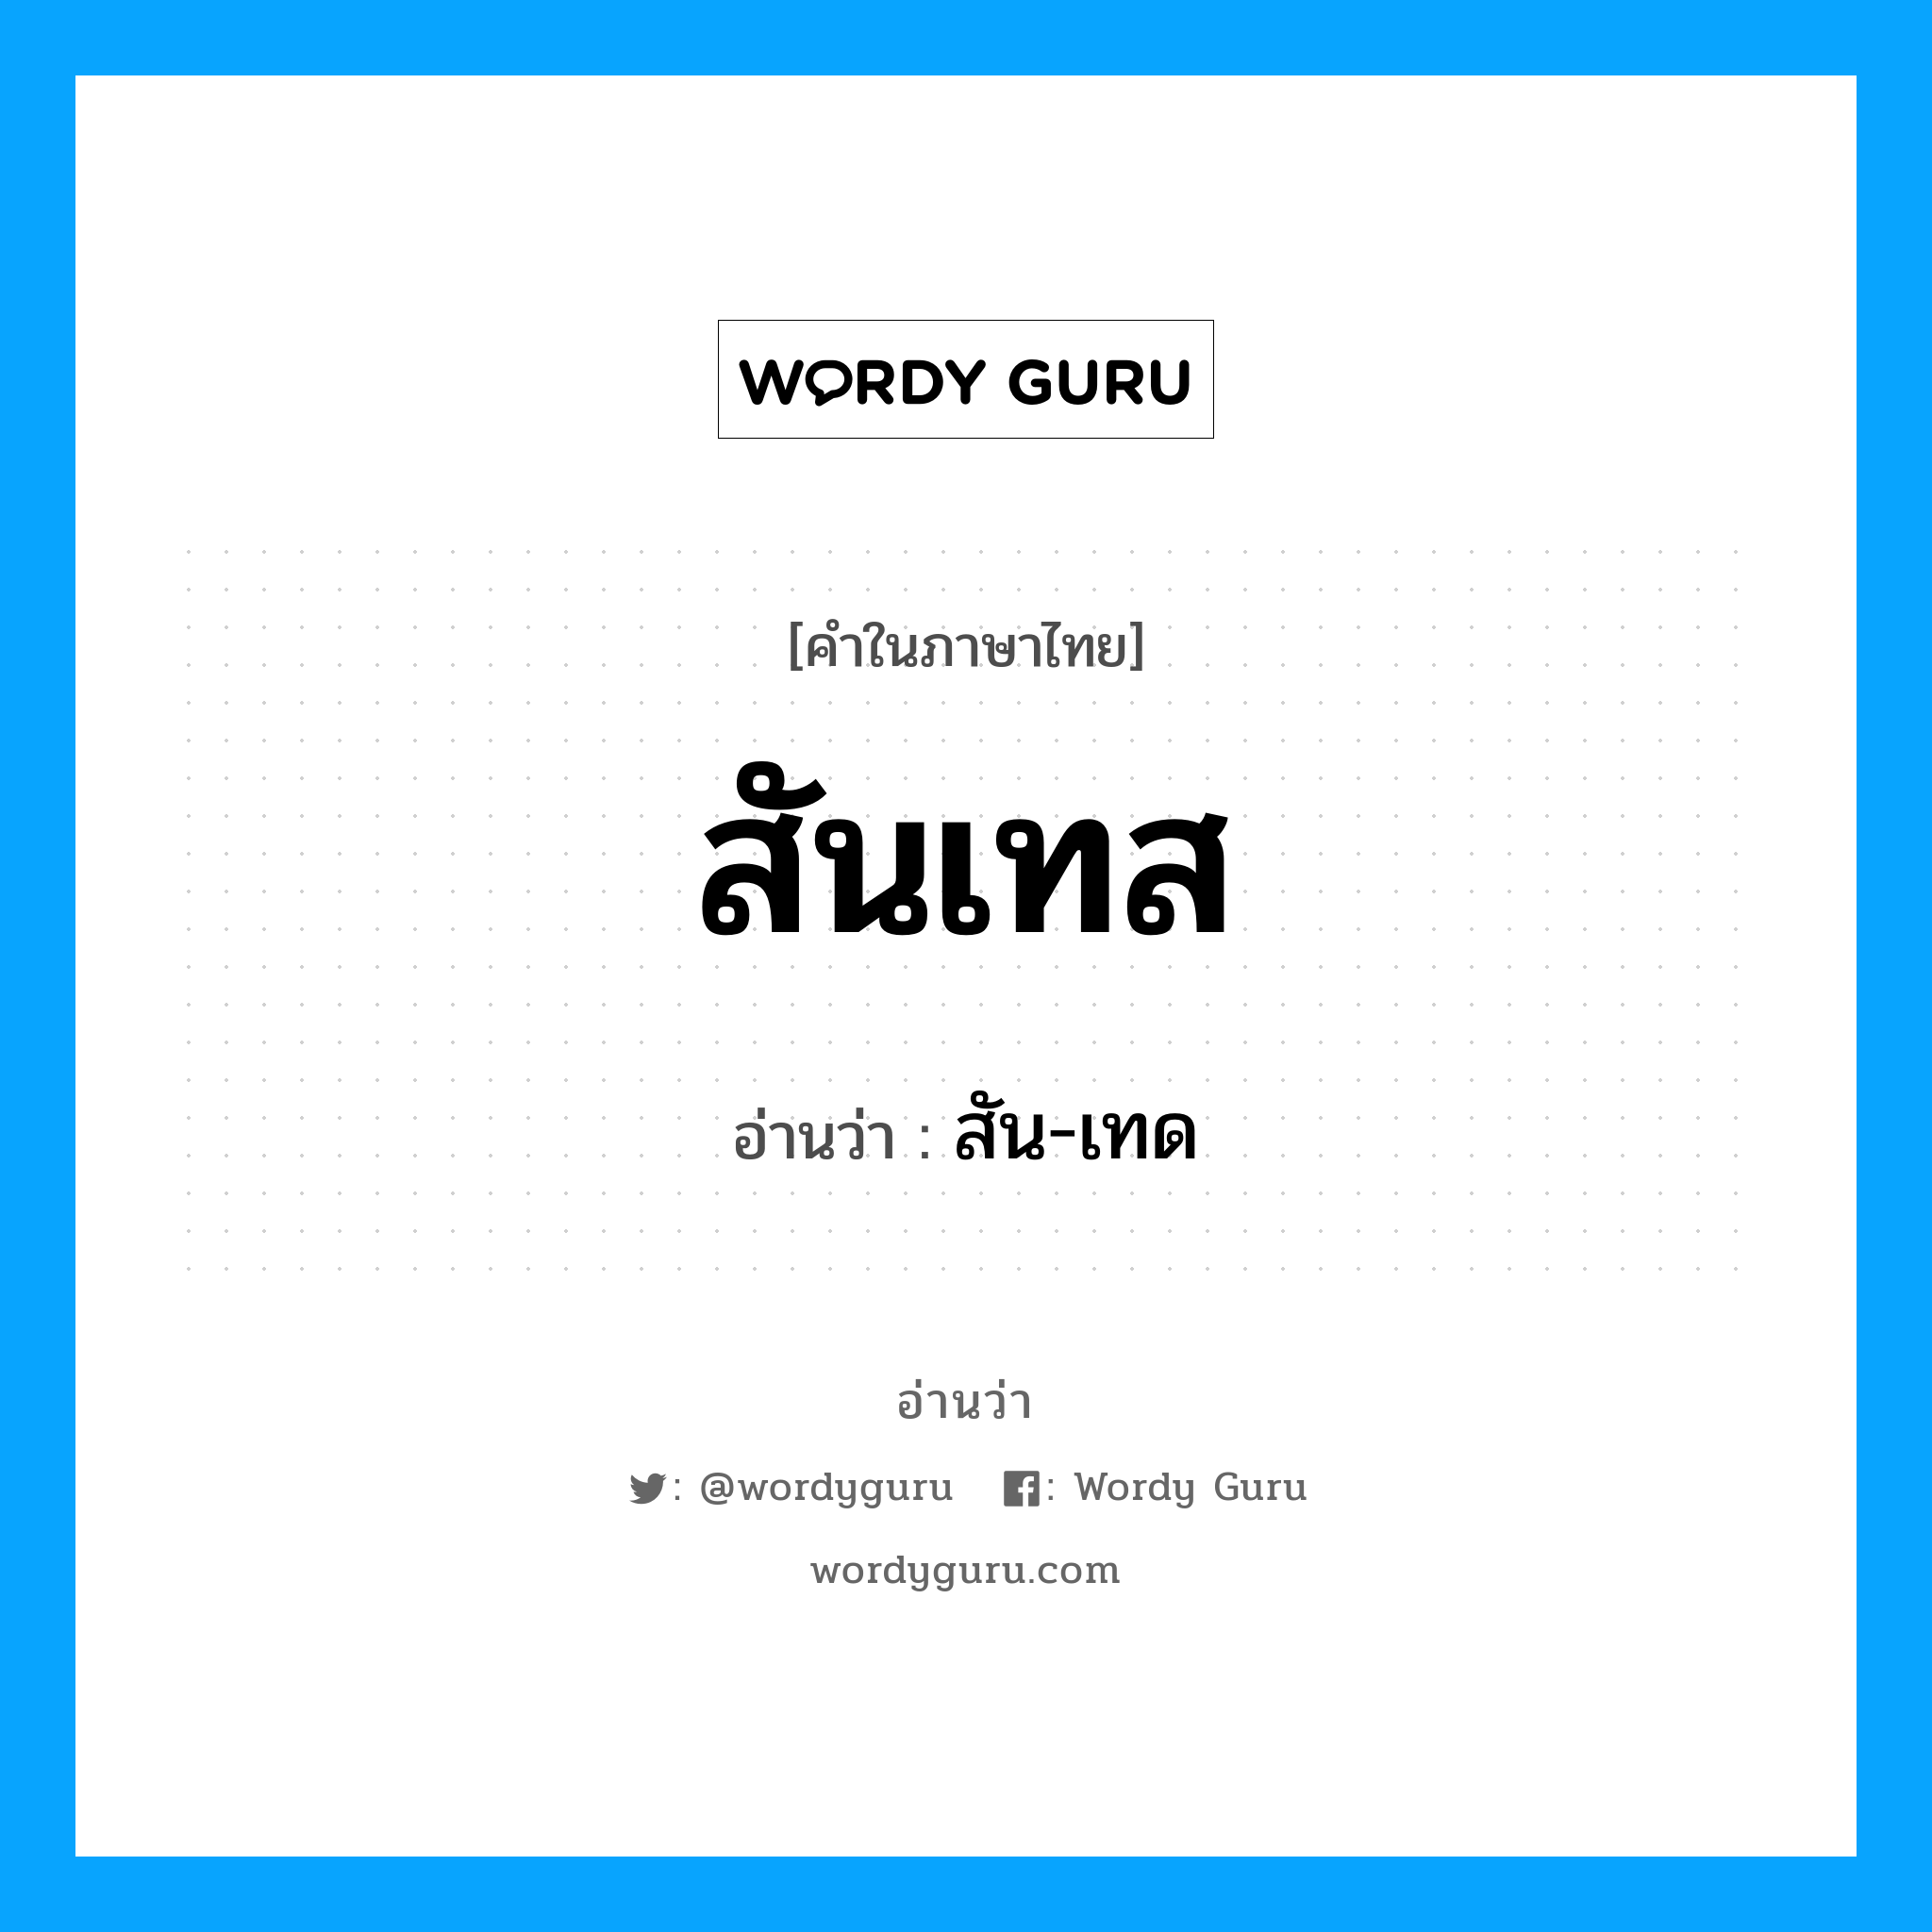 สัน-เทด เป็นคำอ่านของคำไหน?, คำในภาษาไทย สัน-เทด อ่านว่า สันเทส